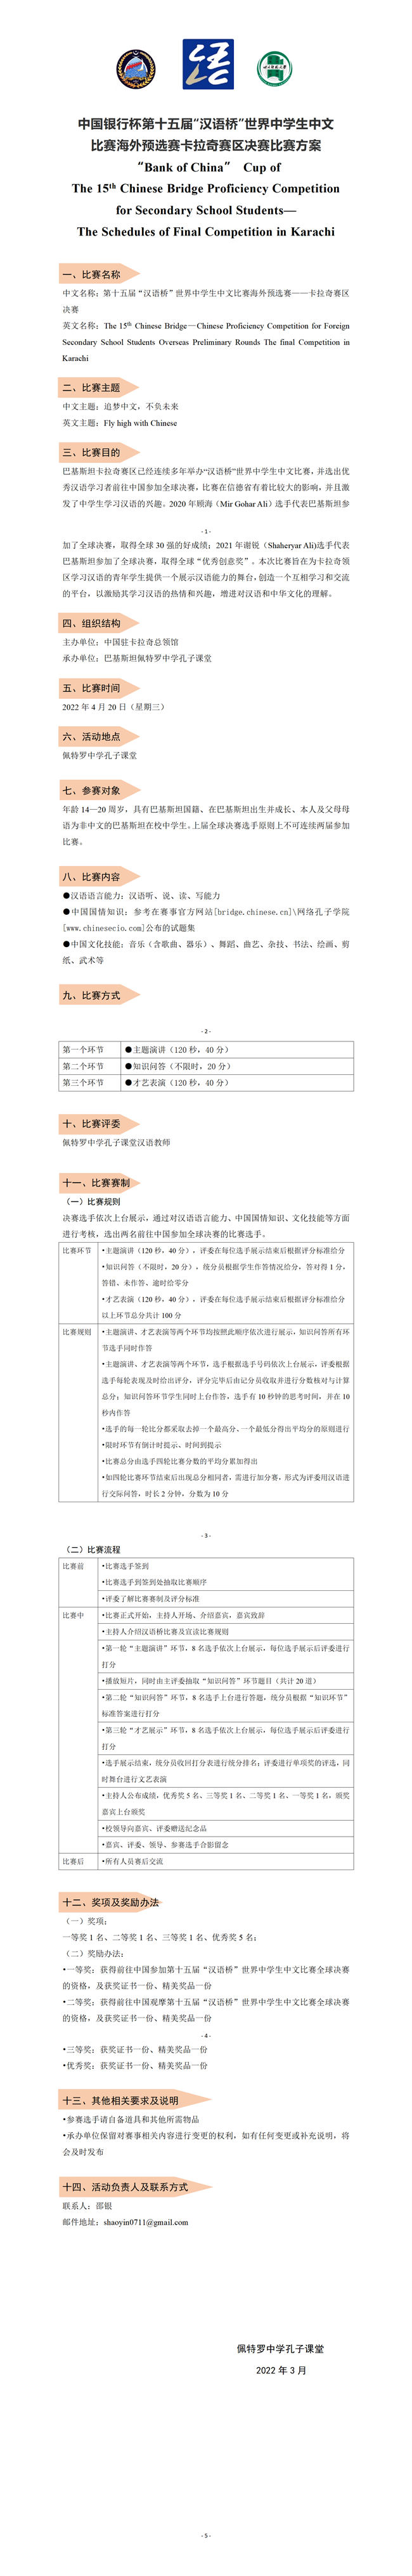 （以此为准）中国银行杯第15届“汉语桥”世界中学生中文比赛海外预选赛——卡拉奇赛区决赛比赛方案_01.png